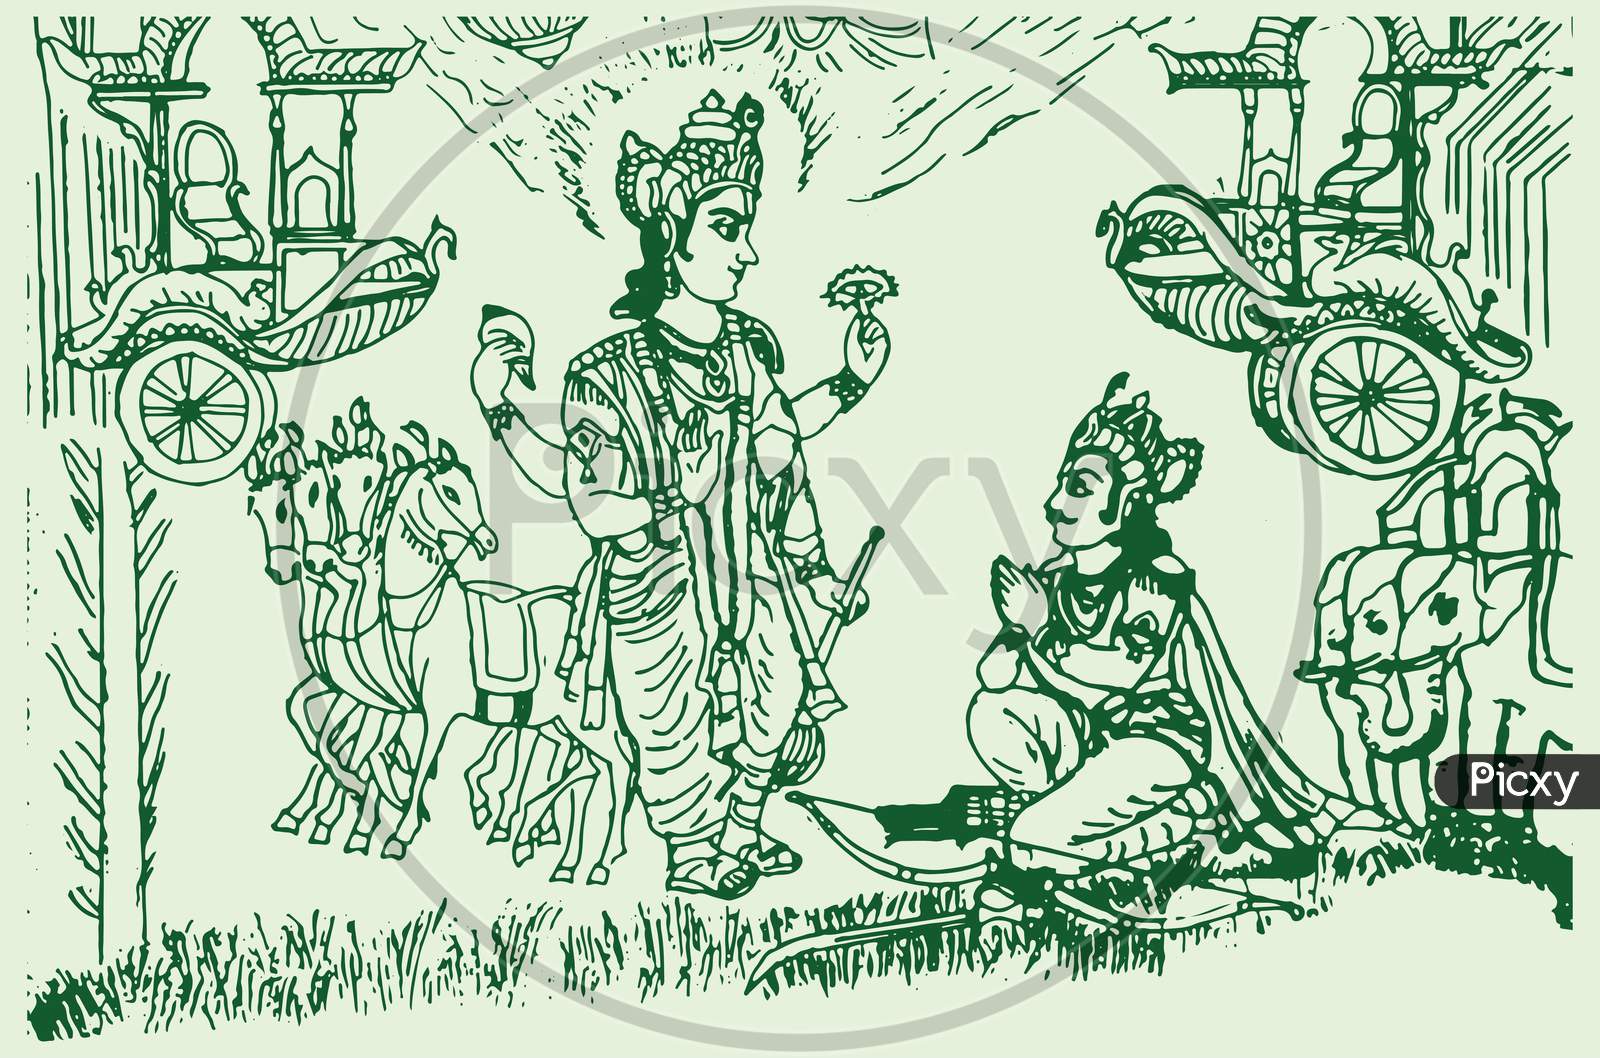 nimisha art: Mahabharata